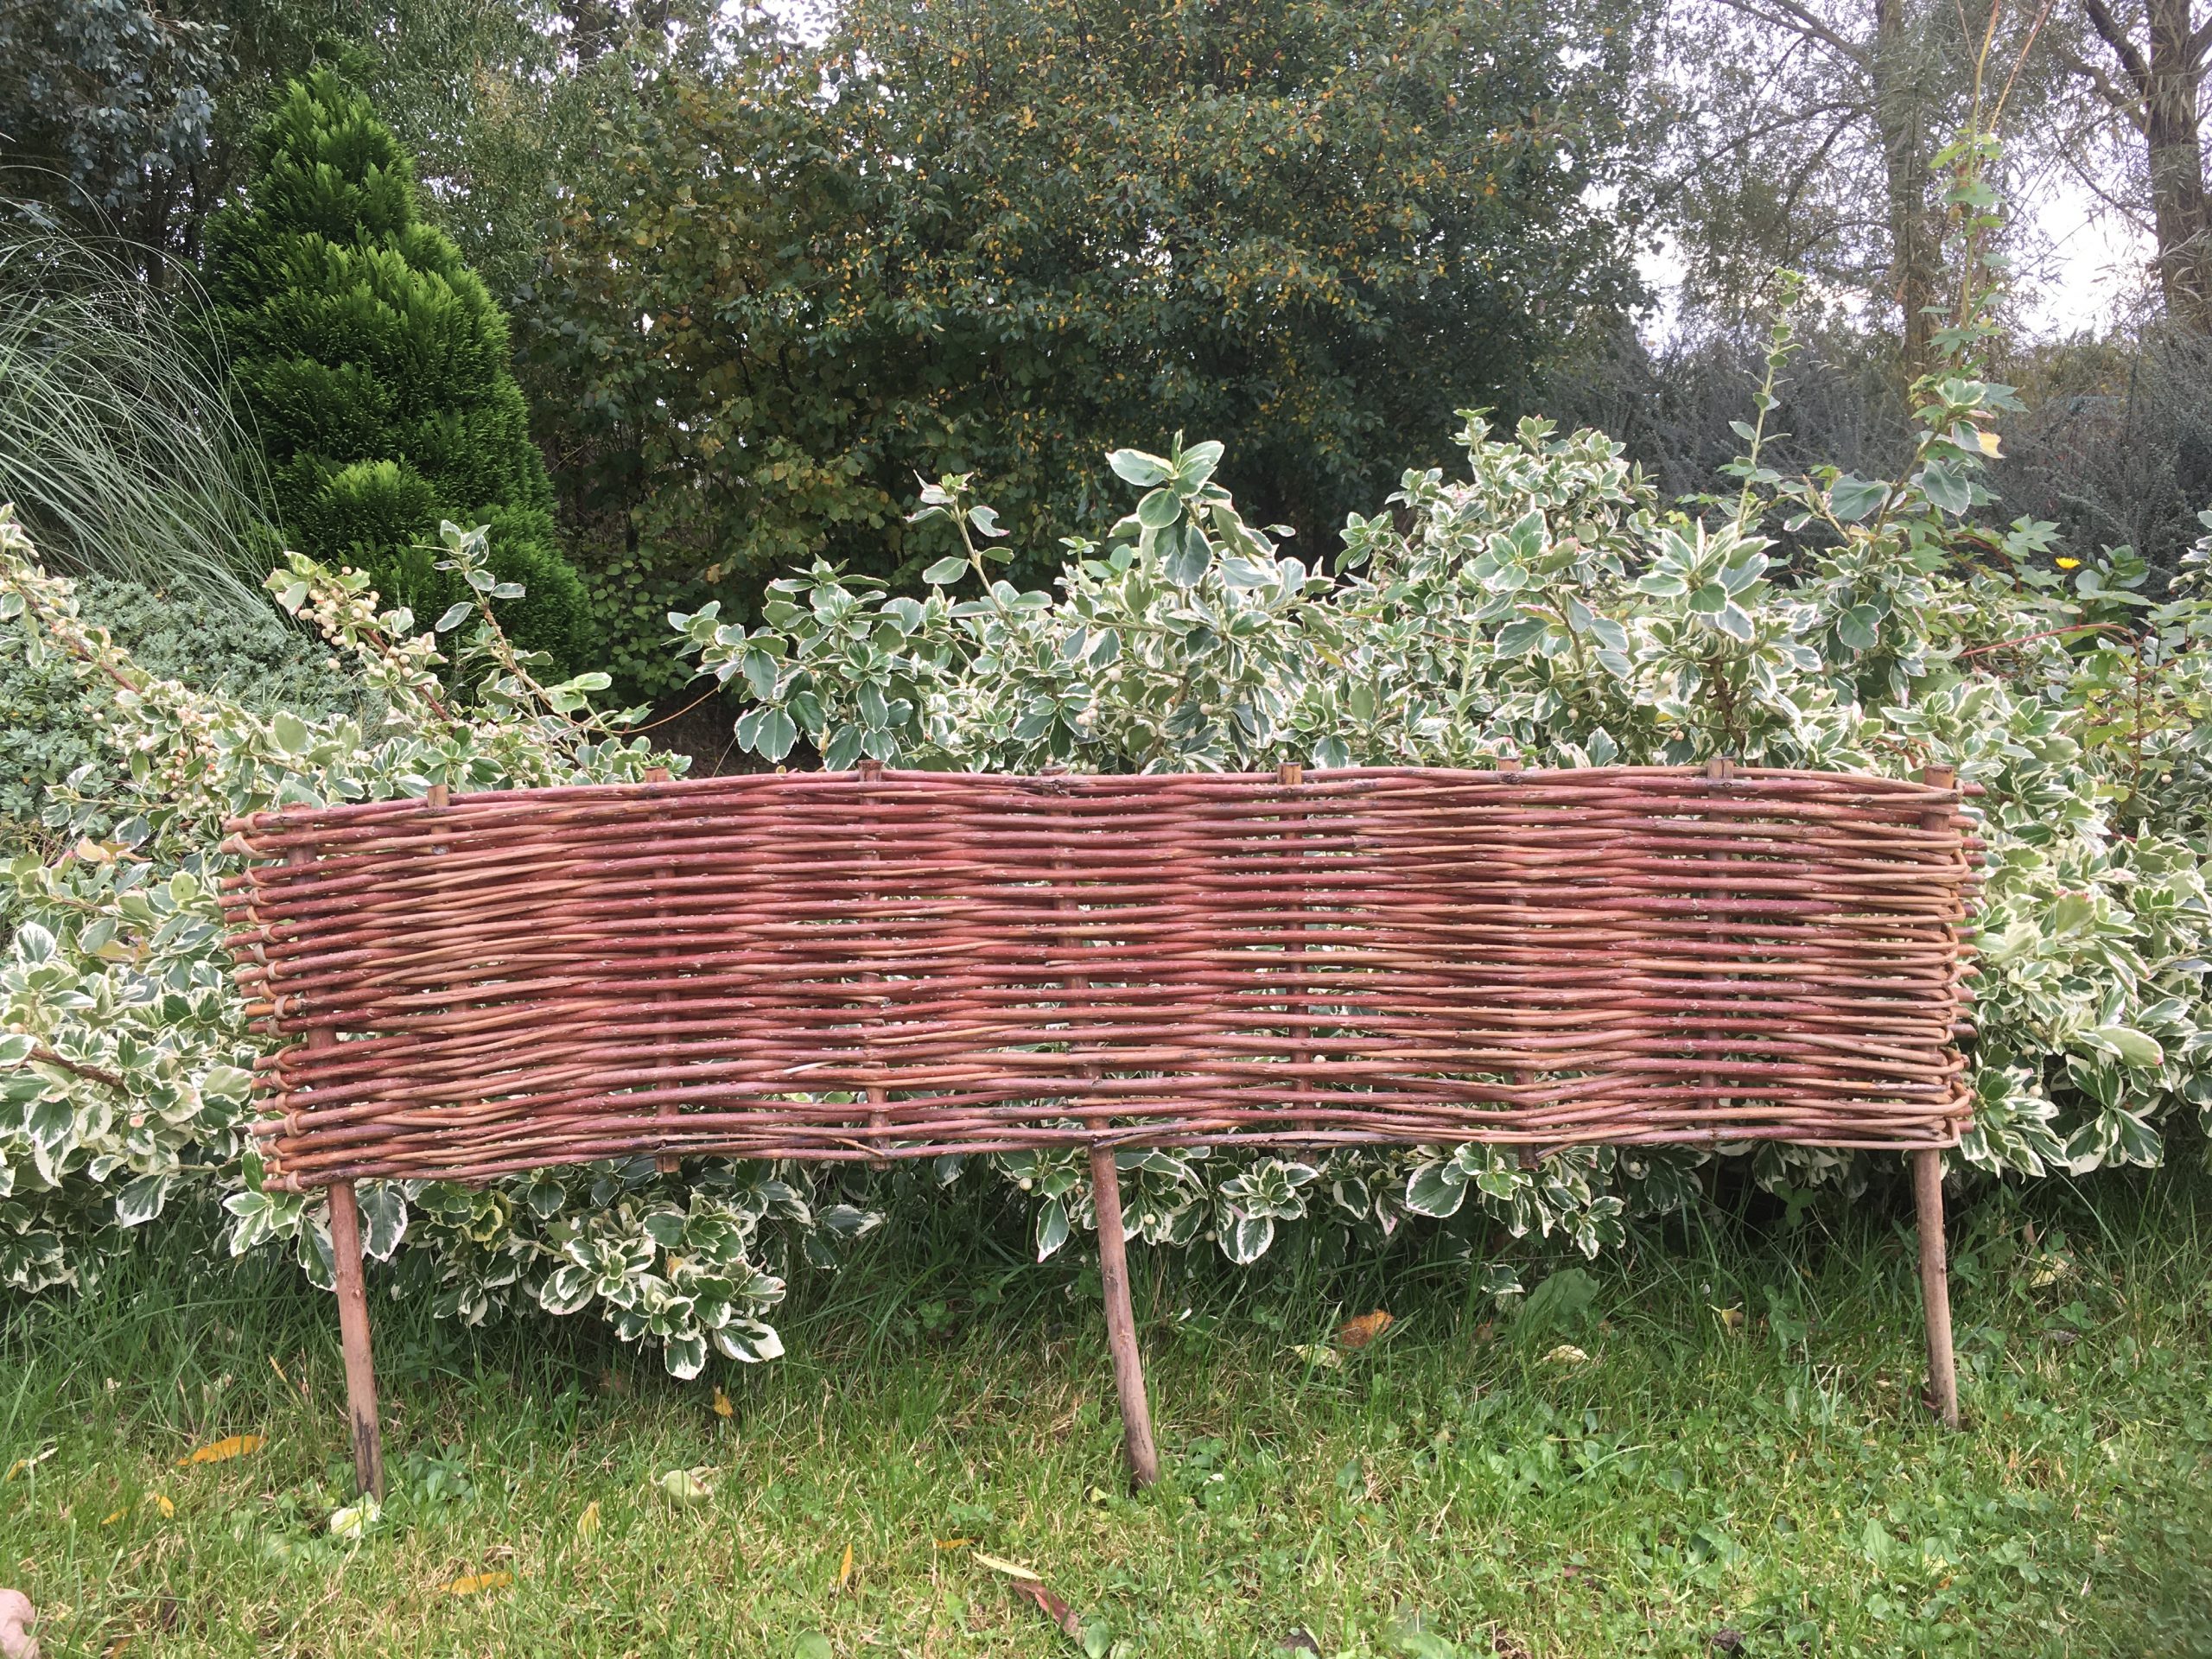 Woven willow garden edging hurdle